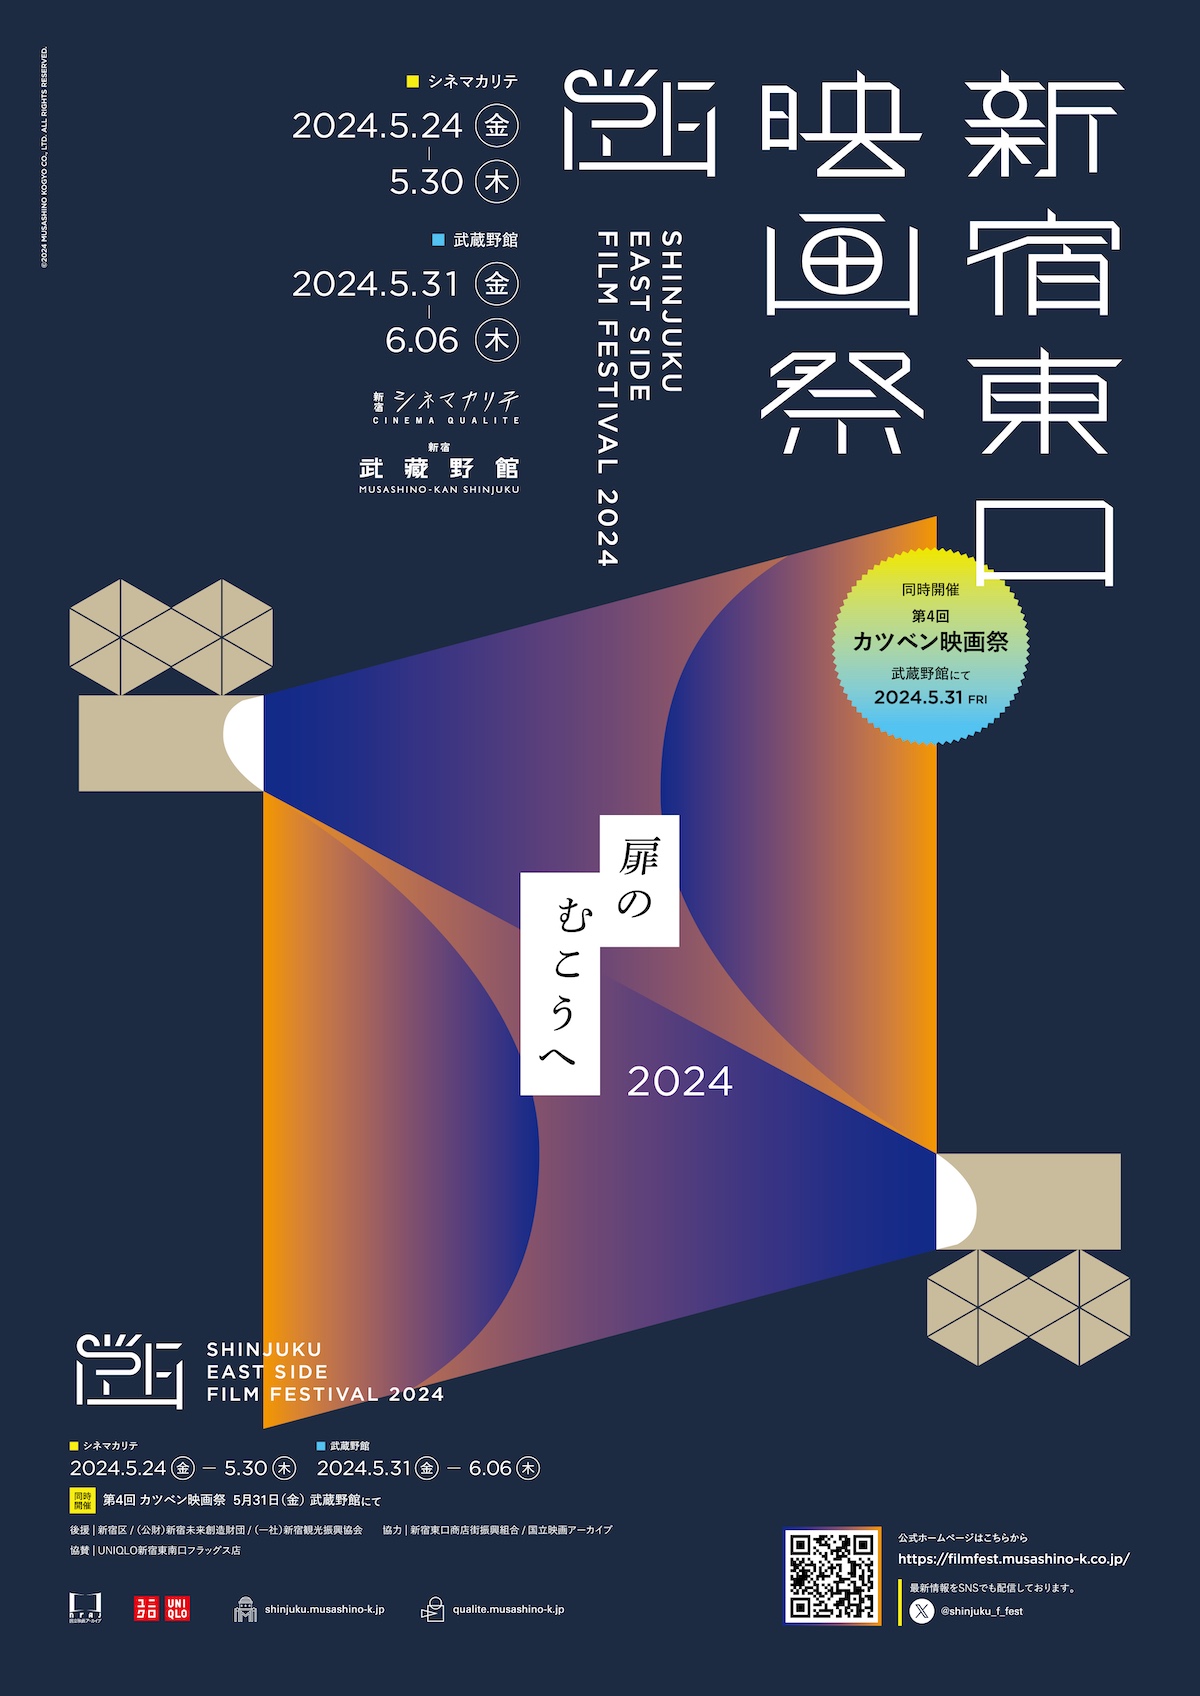 「新宿東口映画祭2024」開催決定の画像